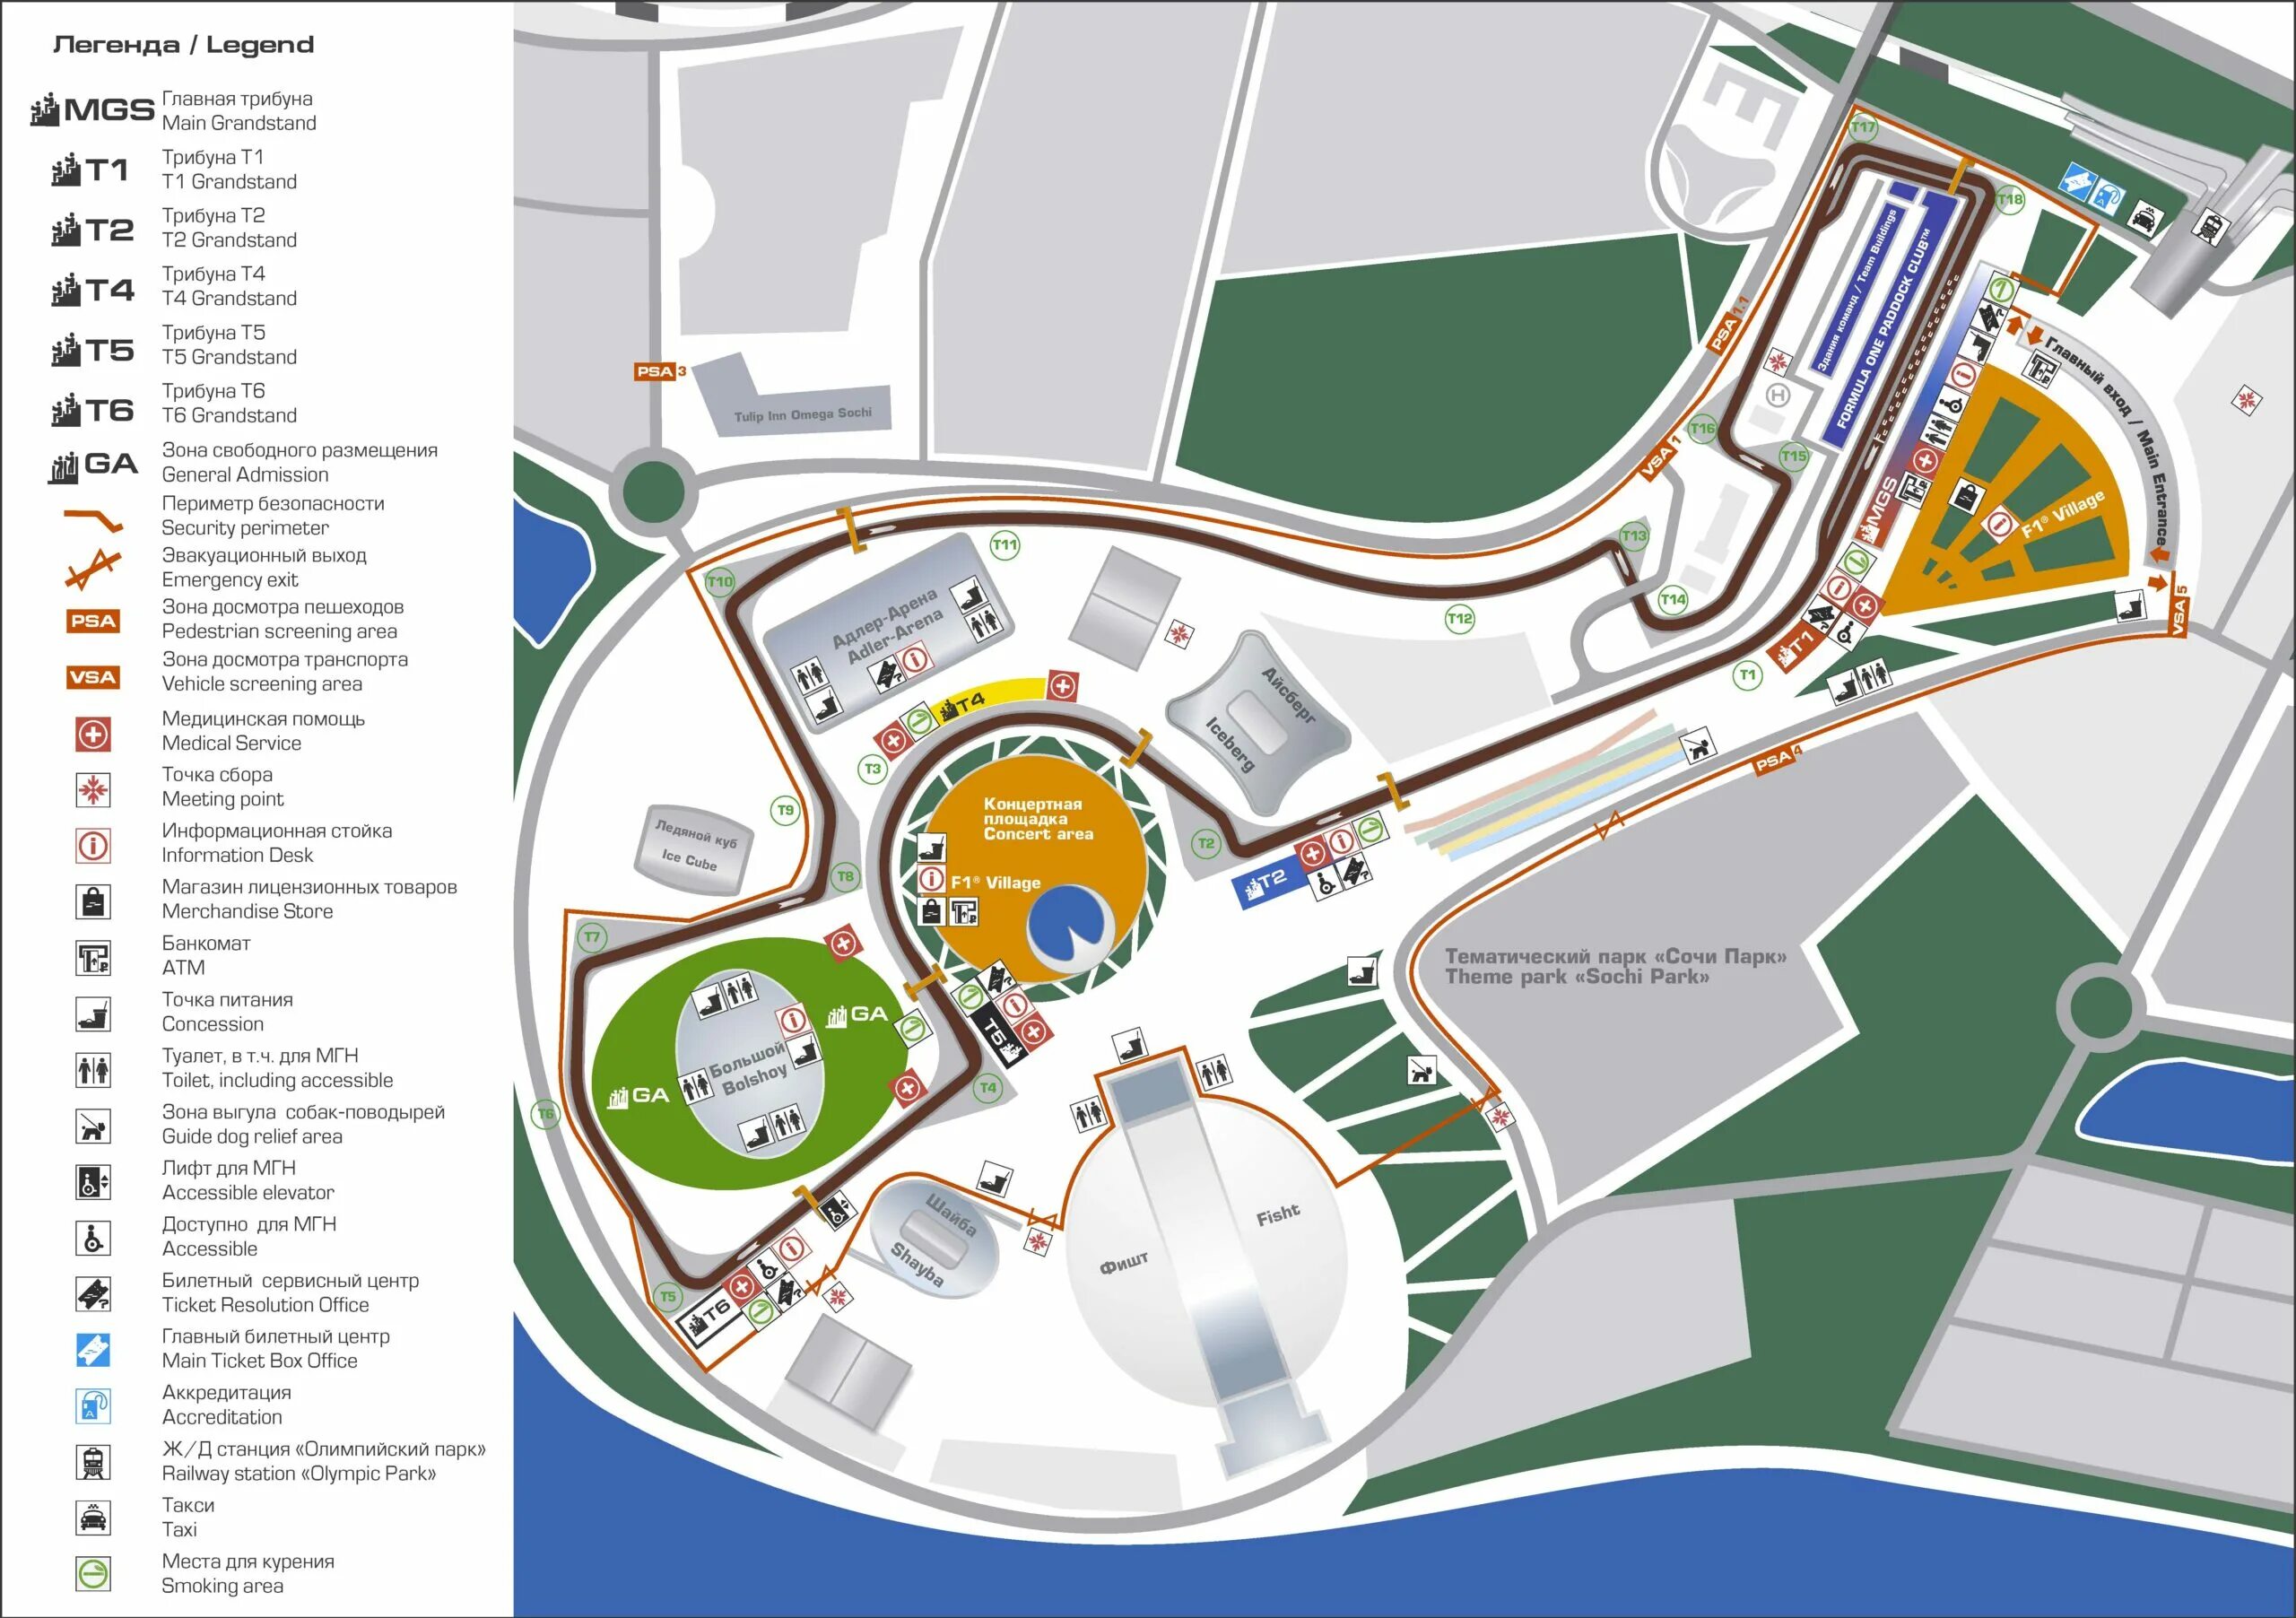 Вход в олимпийский парк. Схема олимпийского парка. Карта схема олимпийского парка Сочи Адлер. Олимпийский парк Сочи 2022. Олимпийский парк Адлер схема парка.